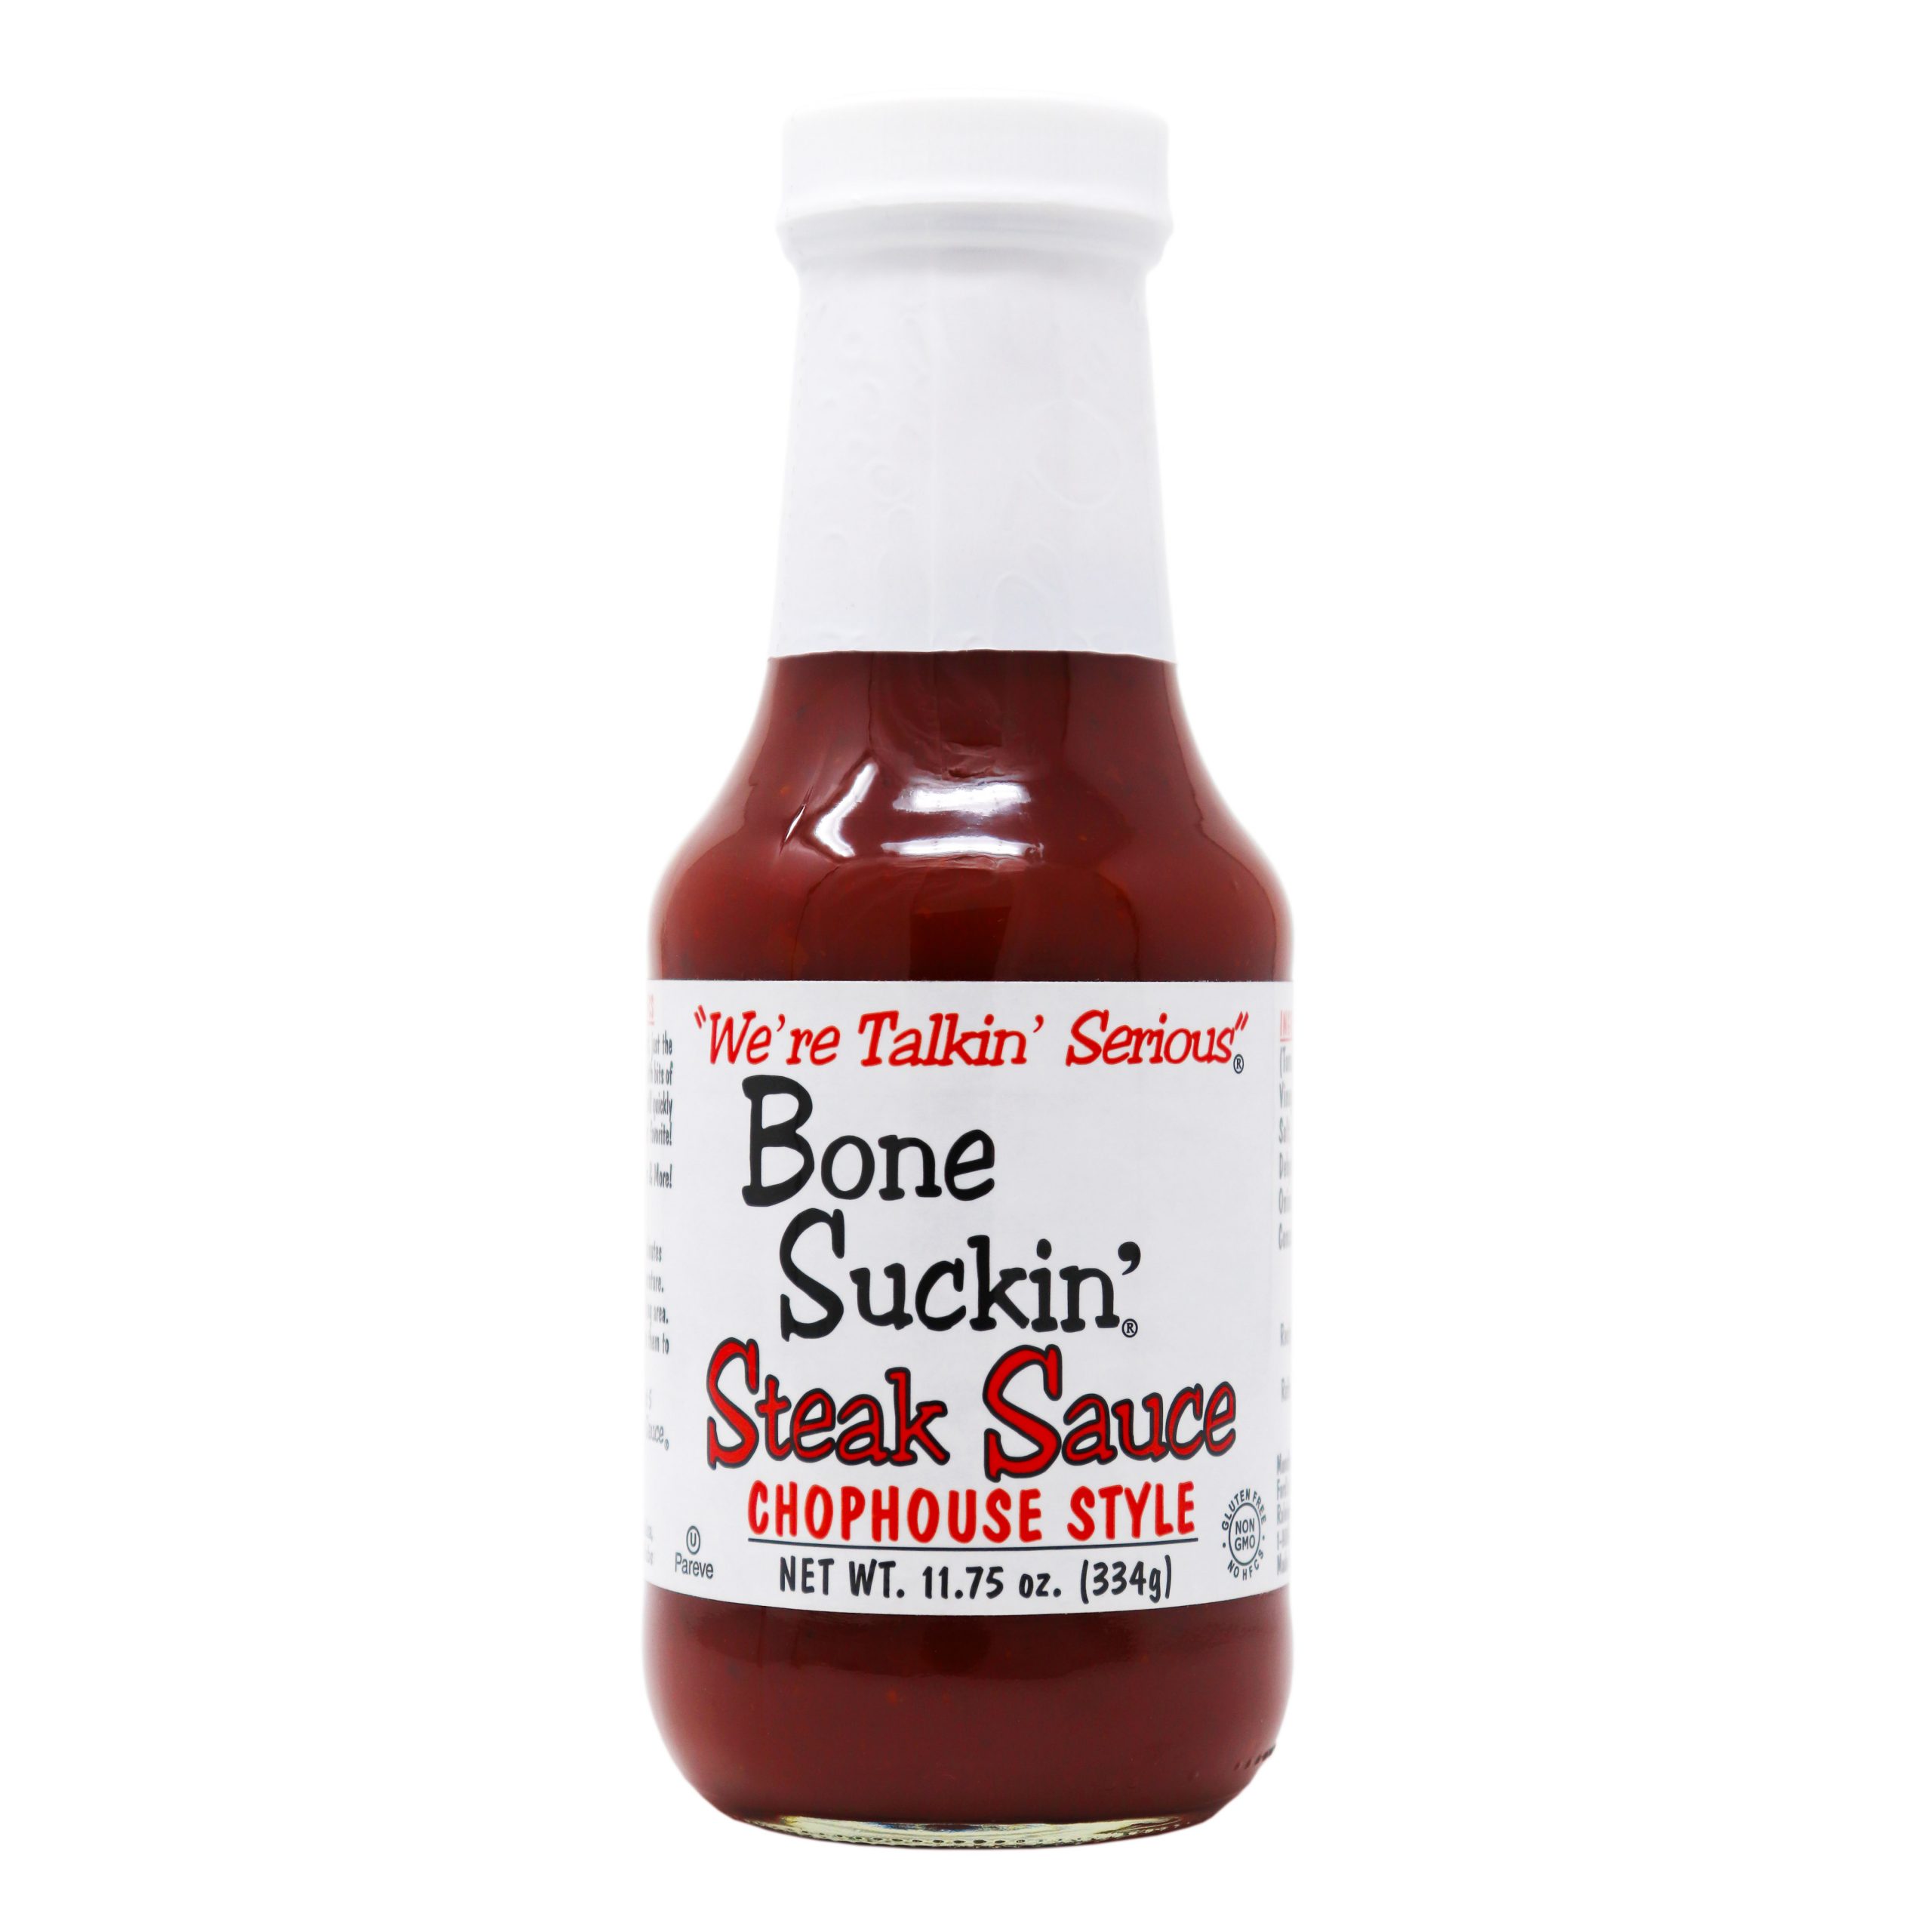 Bone Suckin' Chophouse Steak Sauce, 11.75 oz. Bottle